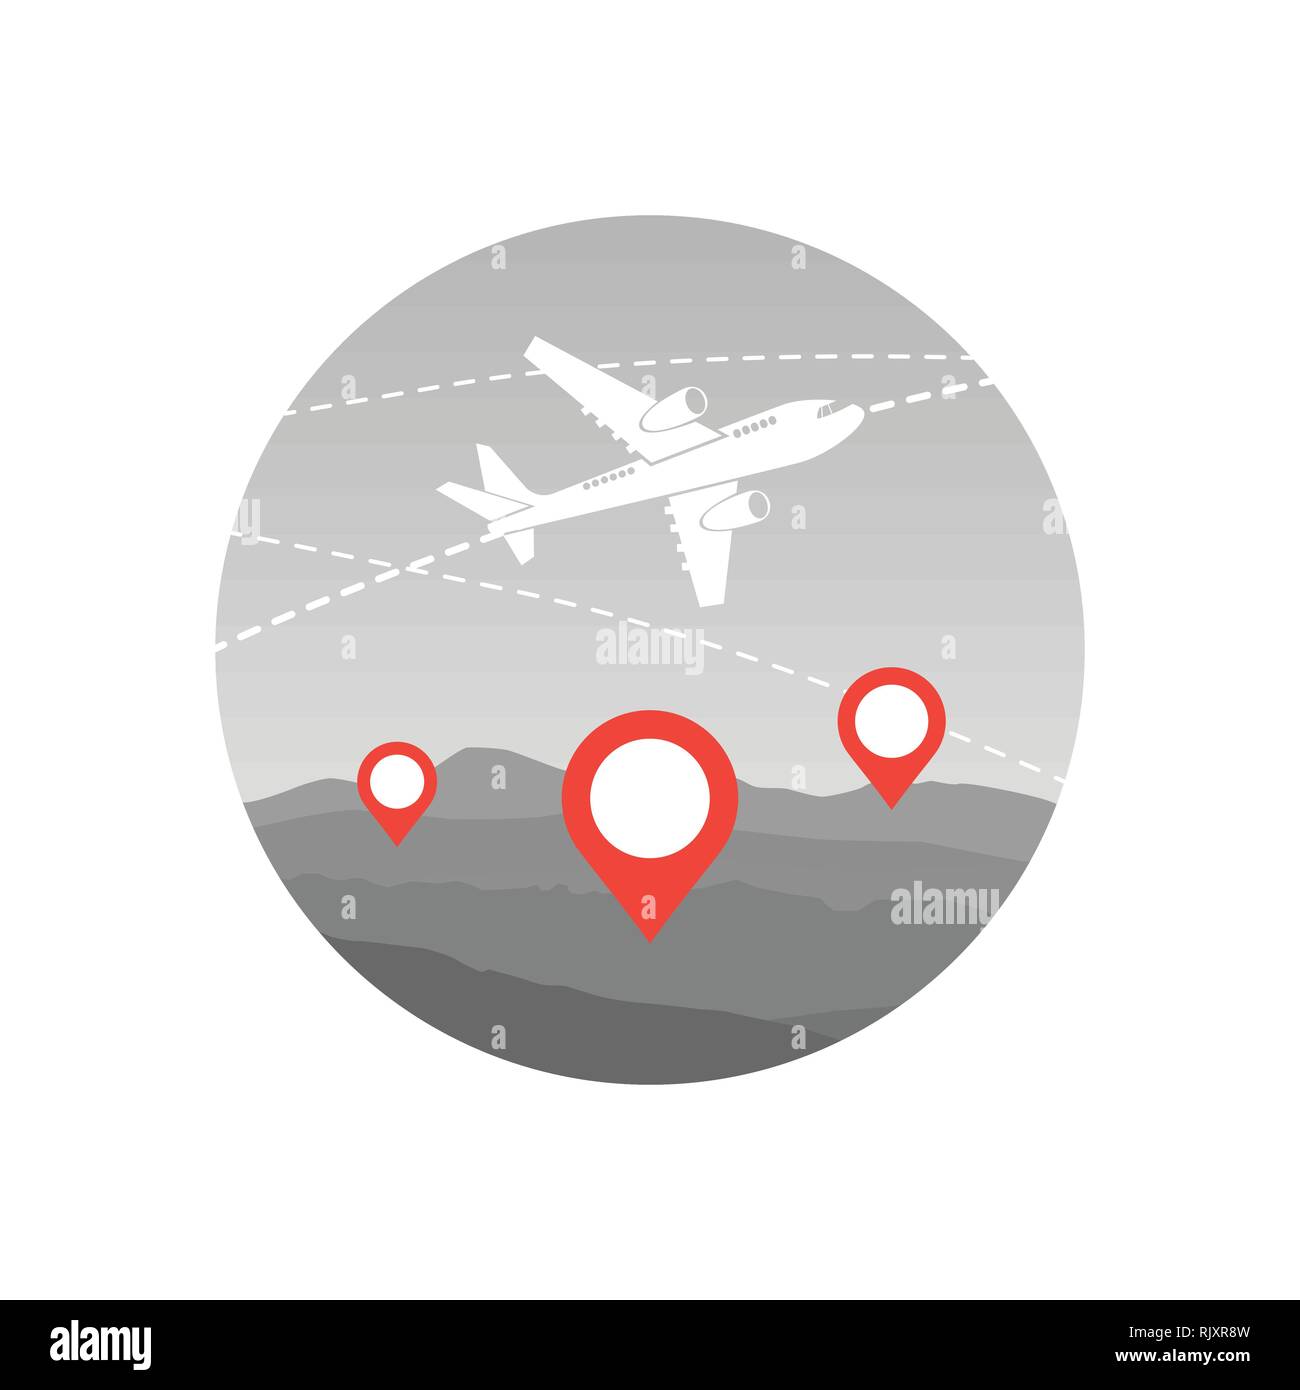 Welt reisen mit dem Flugzeug Flugzeug über das Symbol Karte mit Zeigern Fliegen Stock Vektor